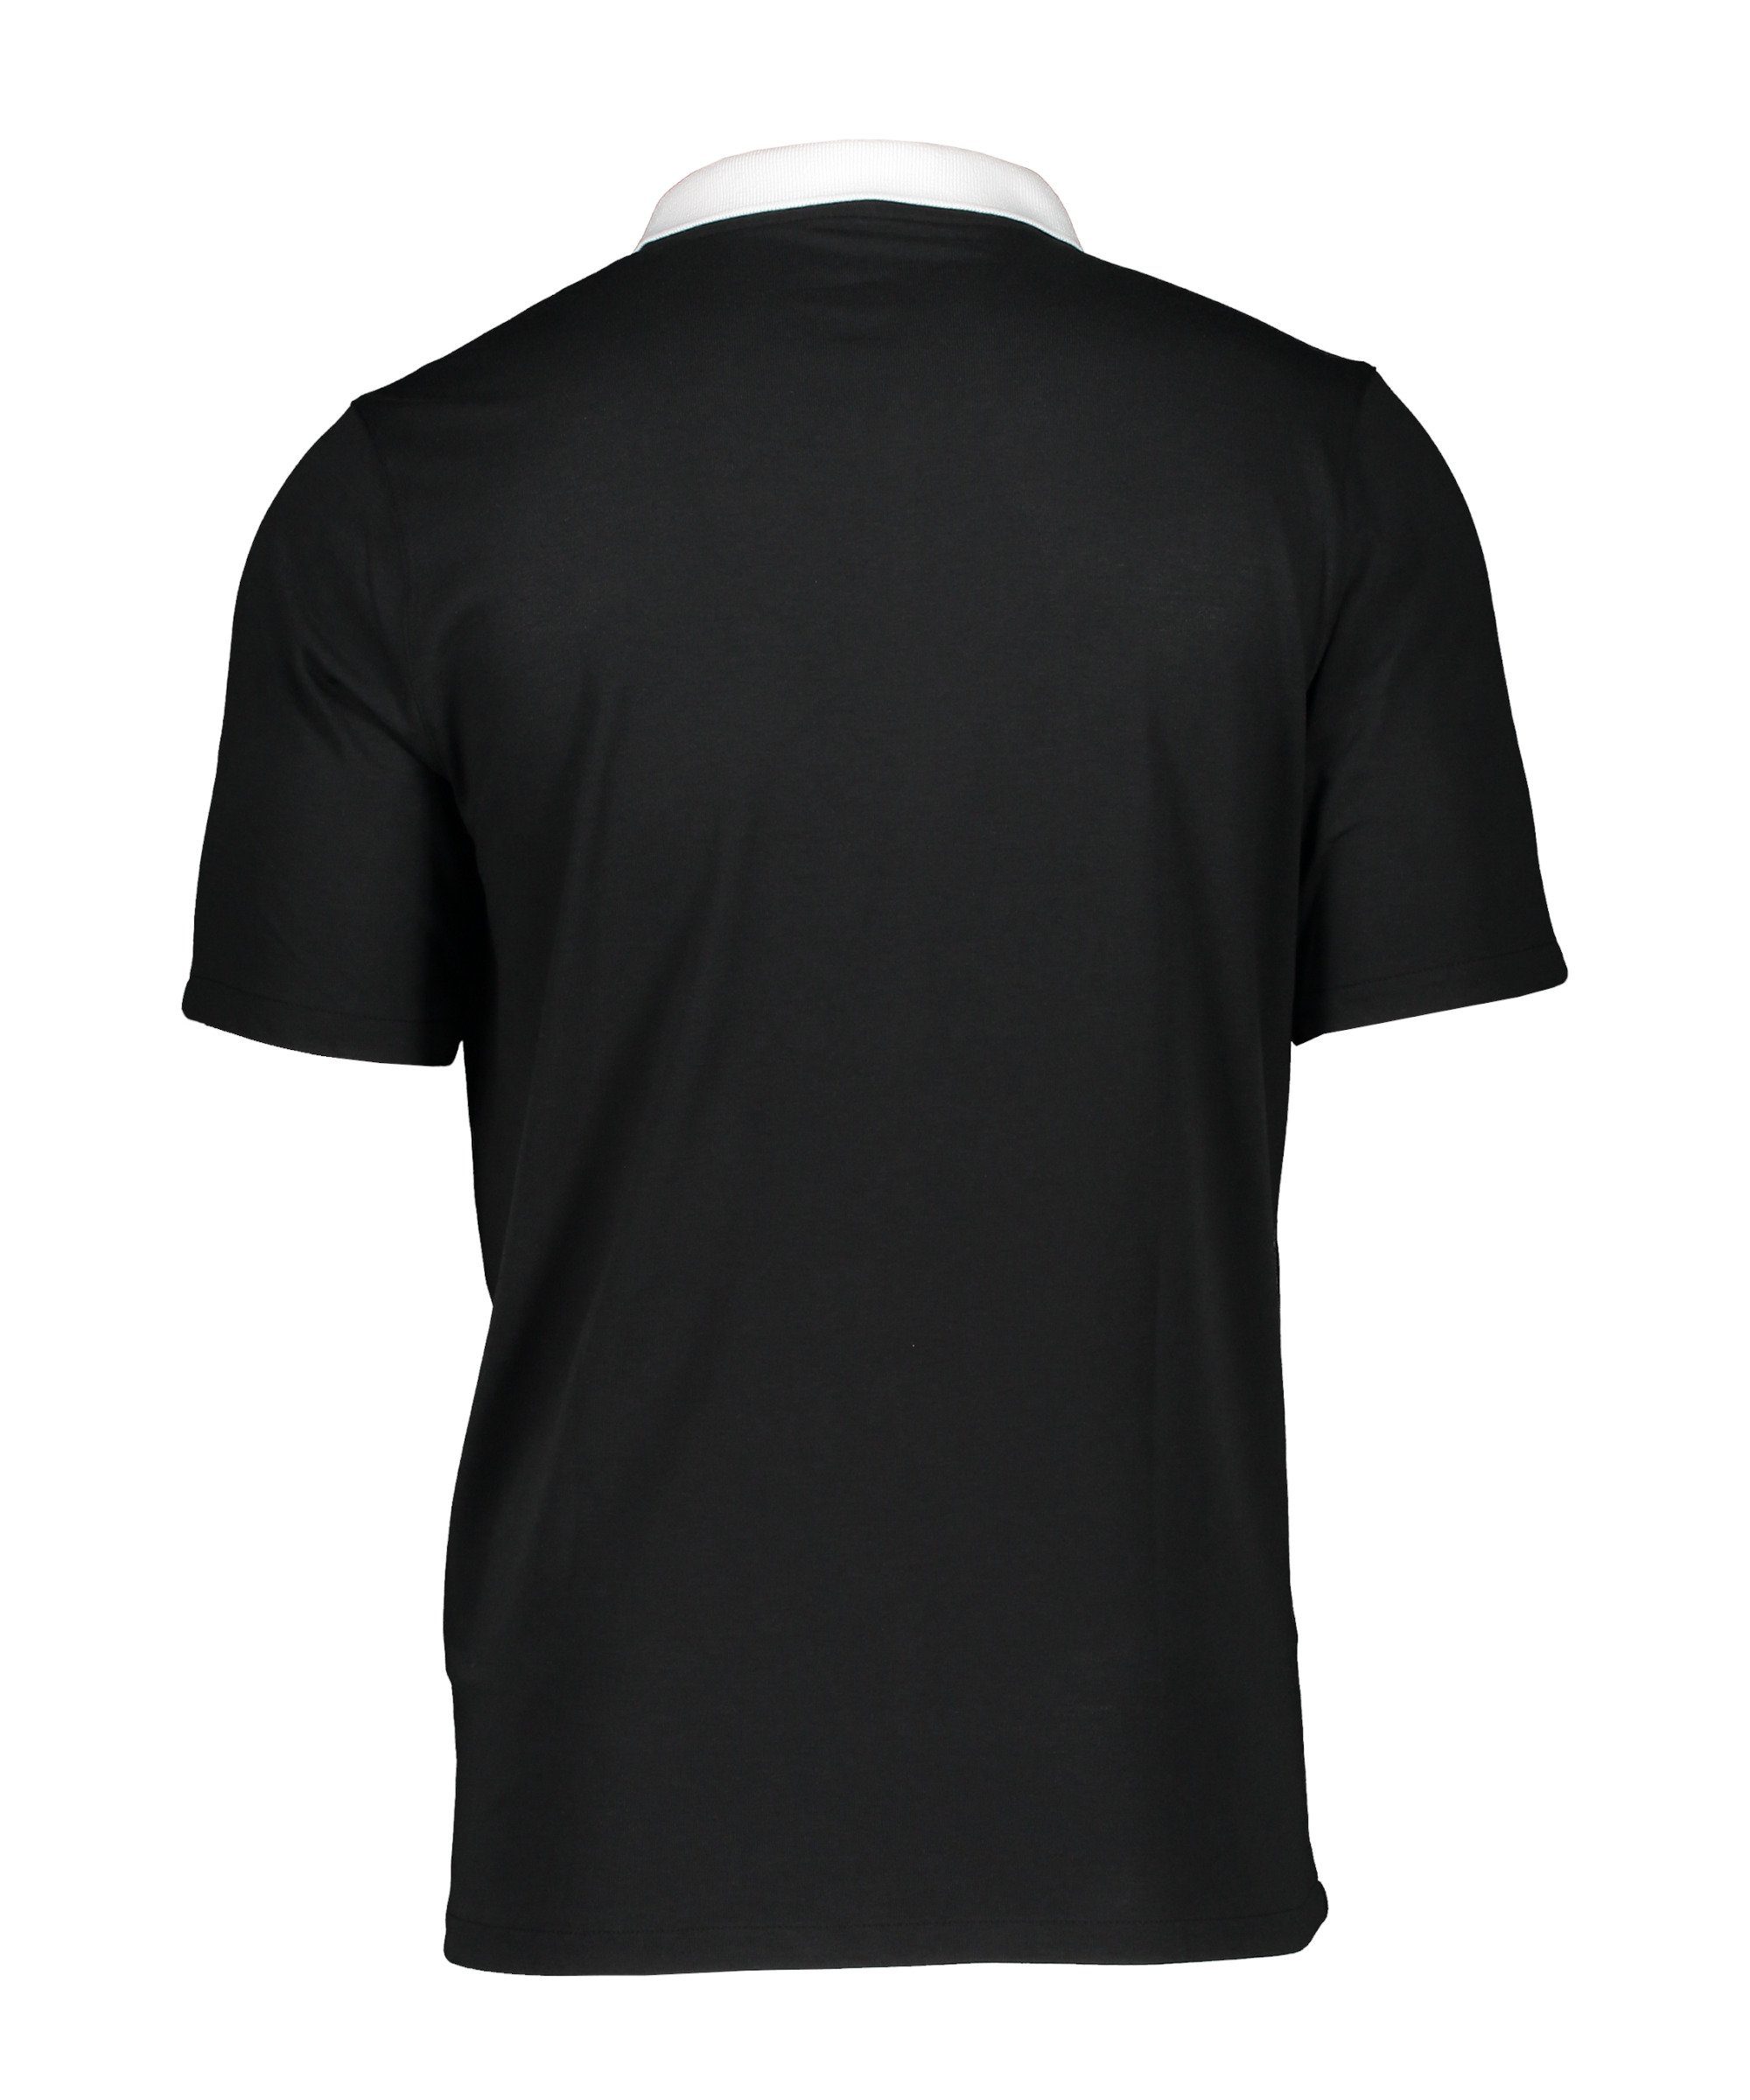 Nike T-Shirt Poloshirt schwarzweiss Park 20 default